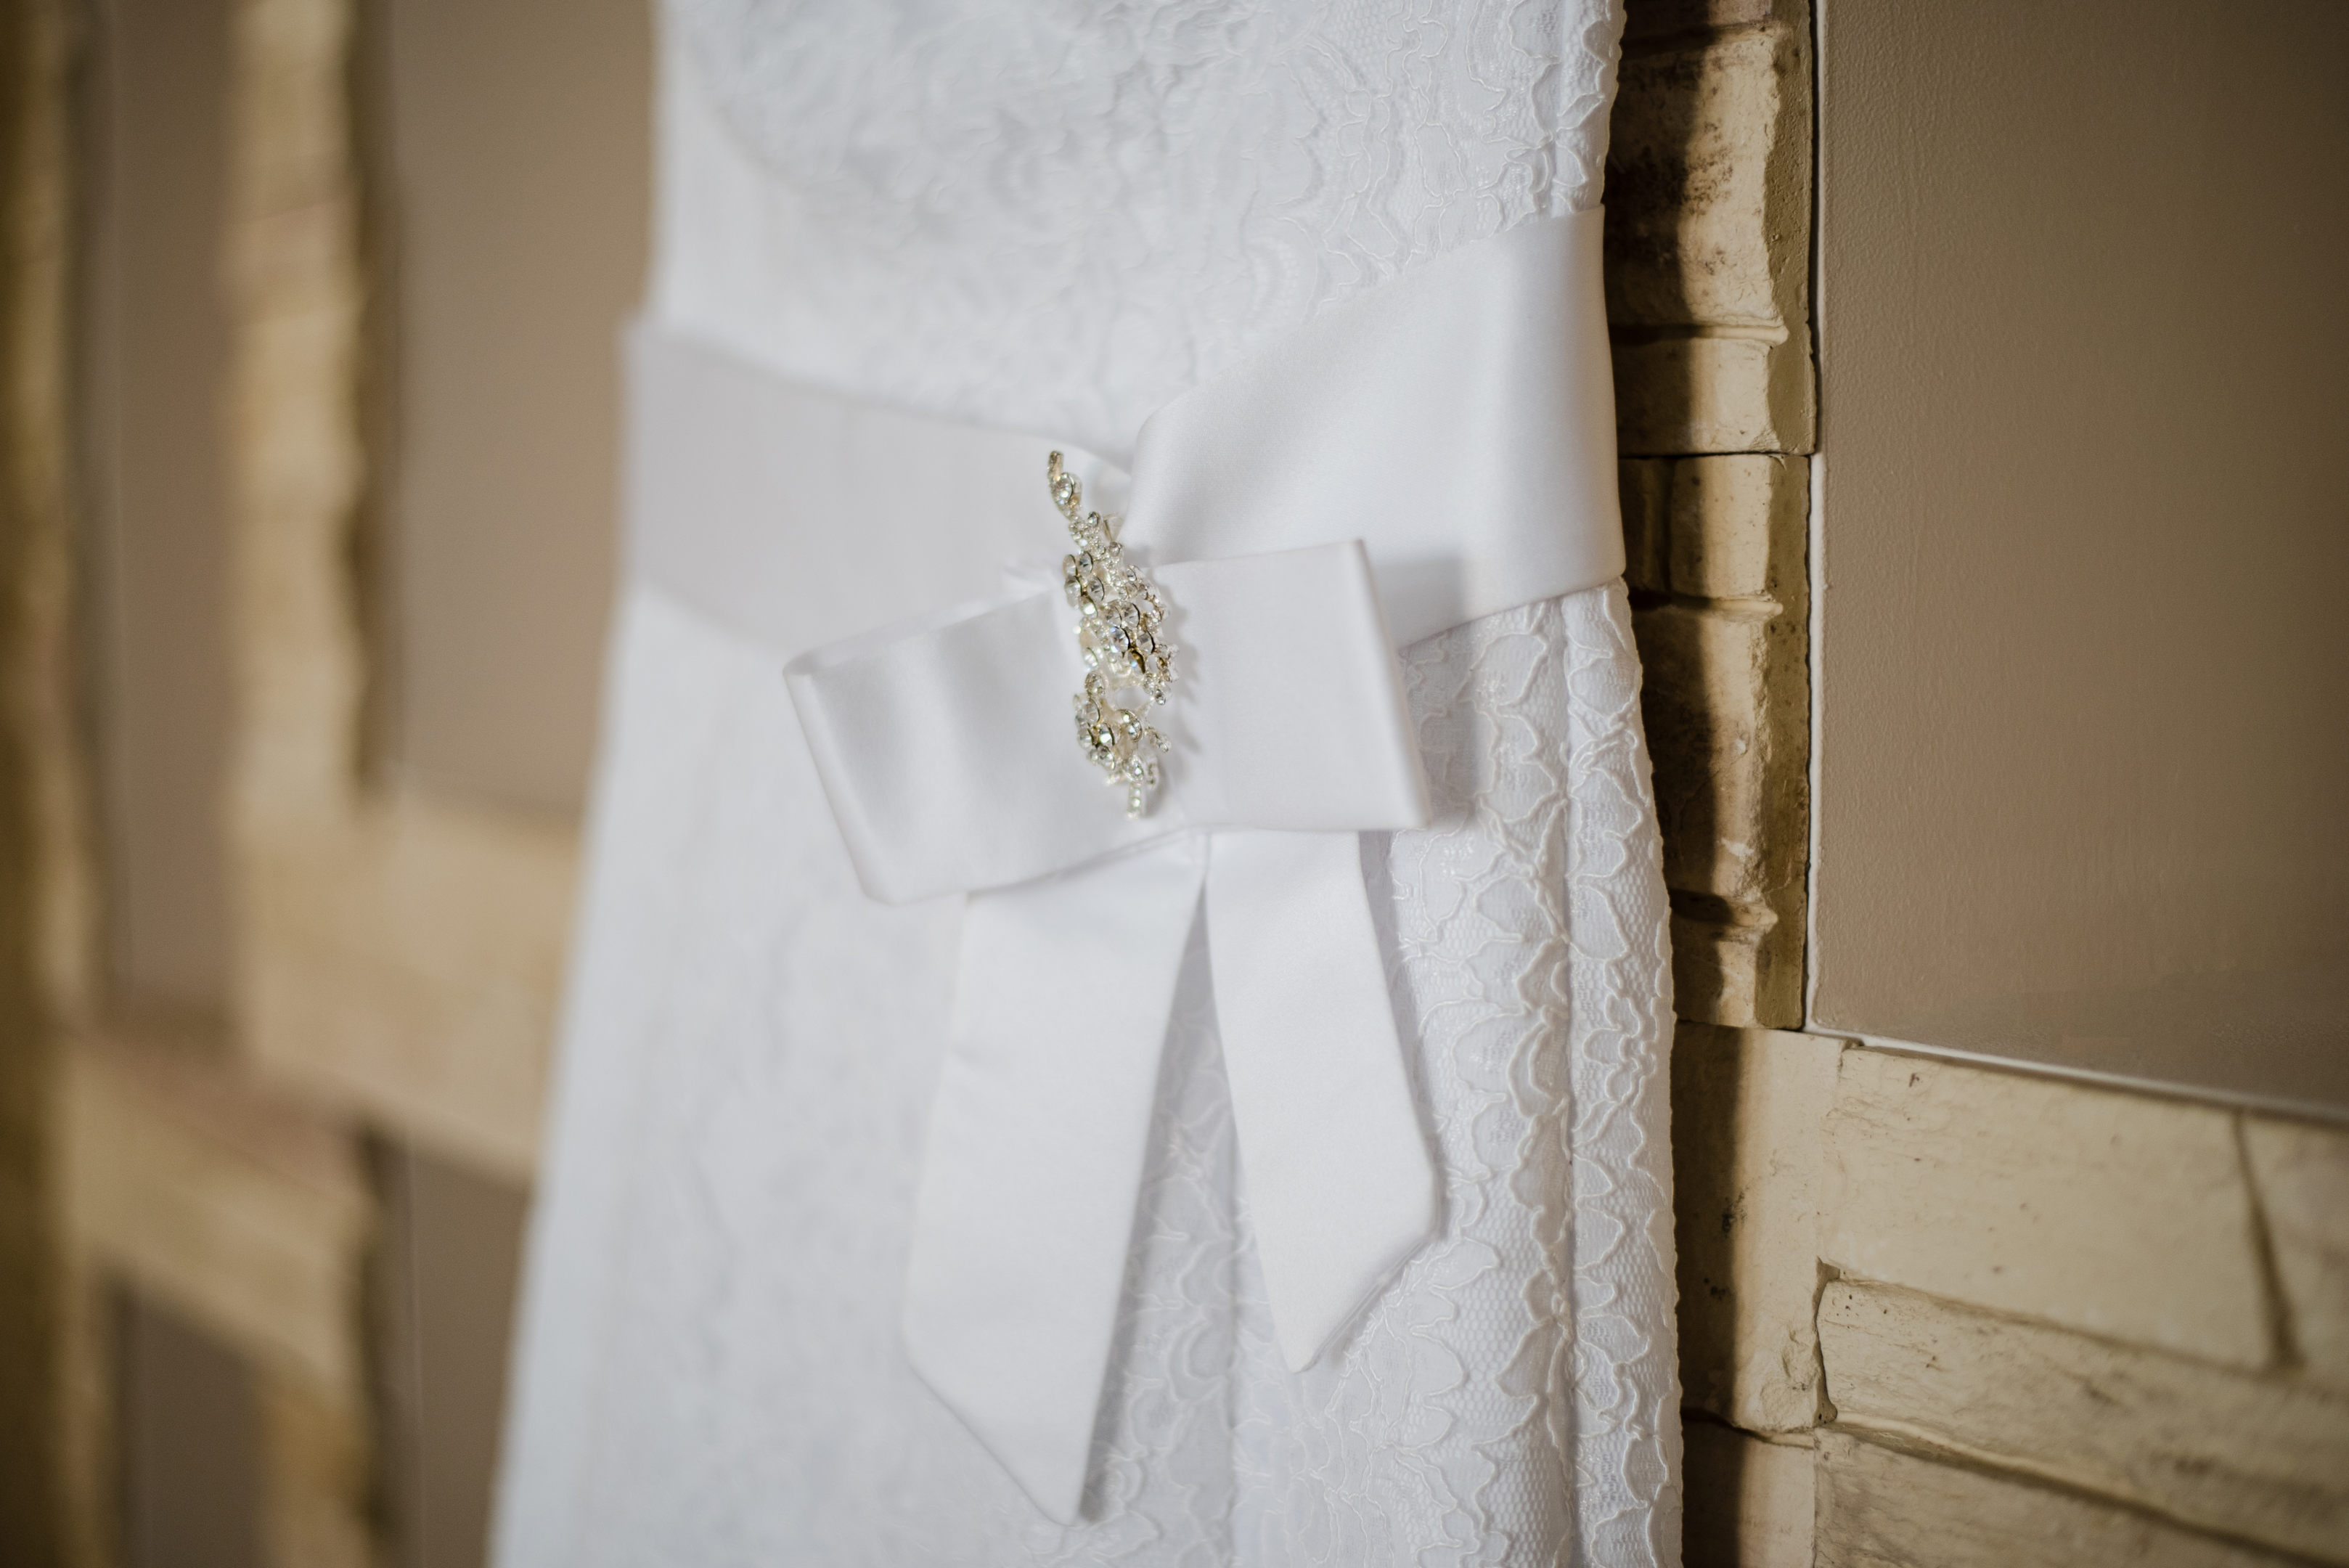 Bridal dress on hanger